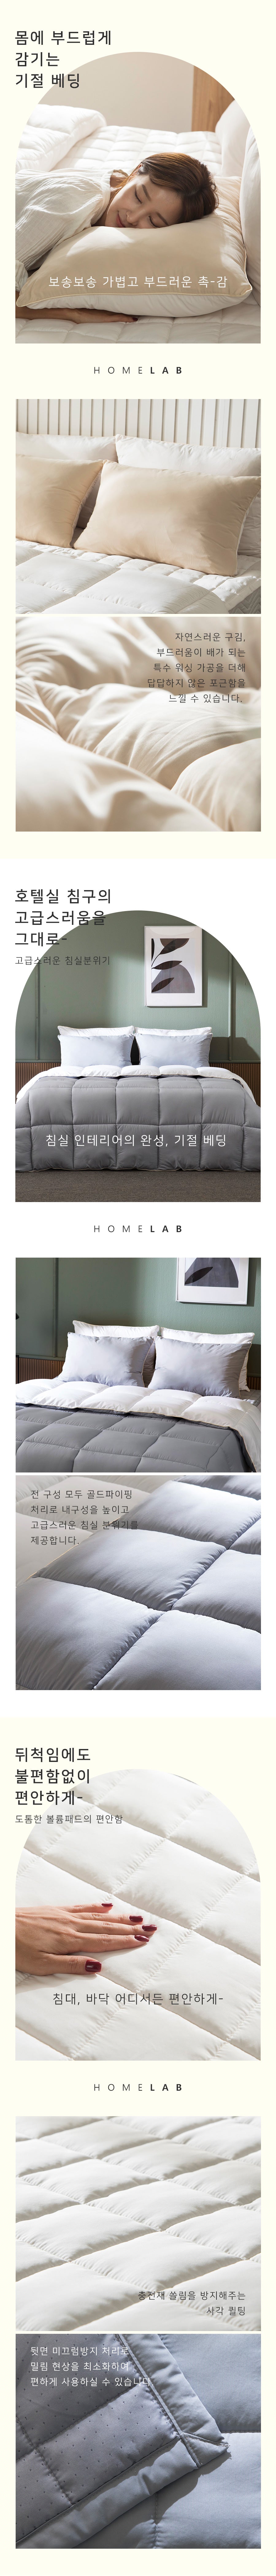 이불 컬러라이트 프로텍터 풀세트 Quilt Set Quilt + Pad + Pillow cover